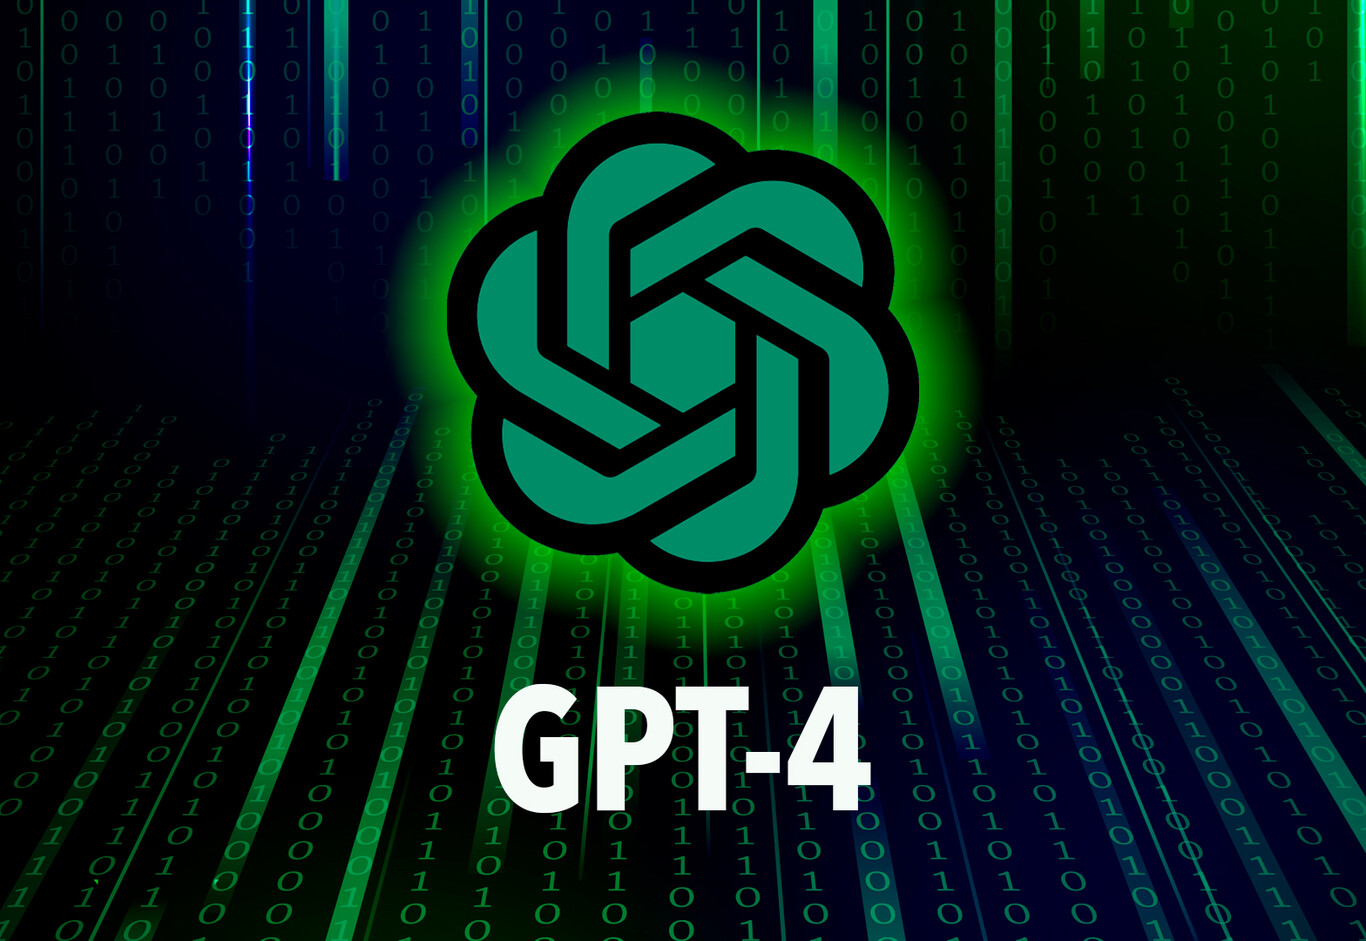 La startup OpenAI, respaldada por Microsoft Corp, comenzó el lanzamiento de GPT-4, un poderoso modelo de inteligencia artificial que sucede a la tecnología detrás del popular ChatGPT.